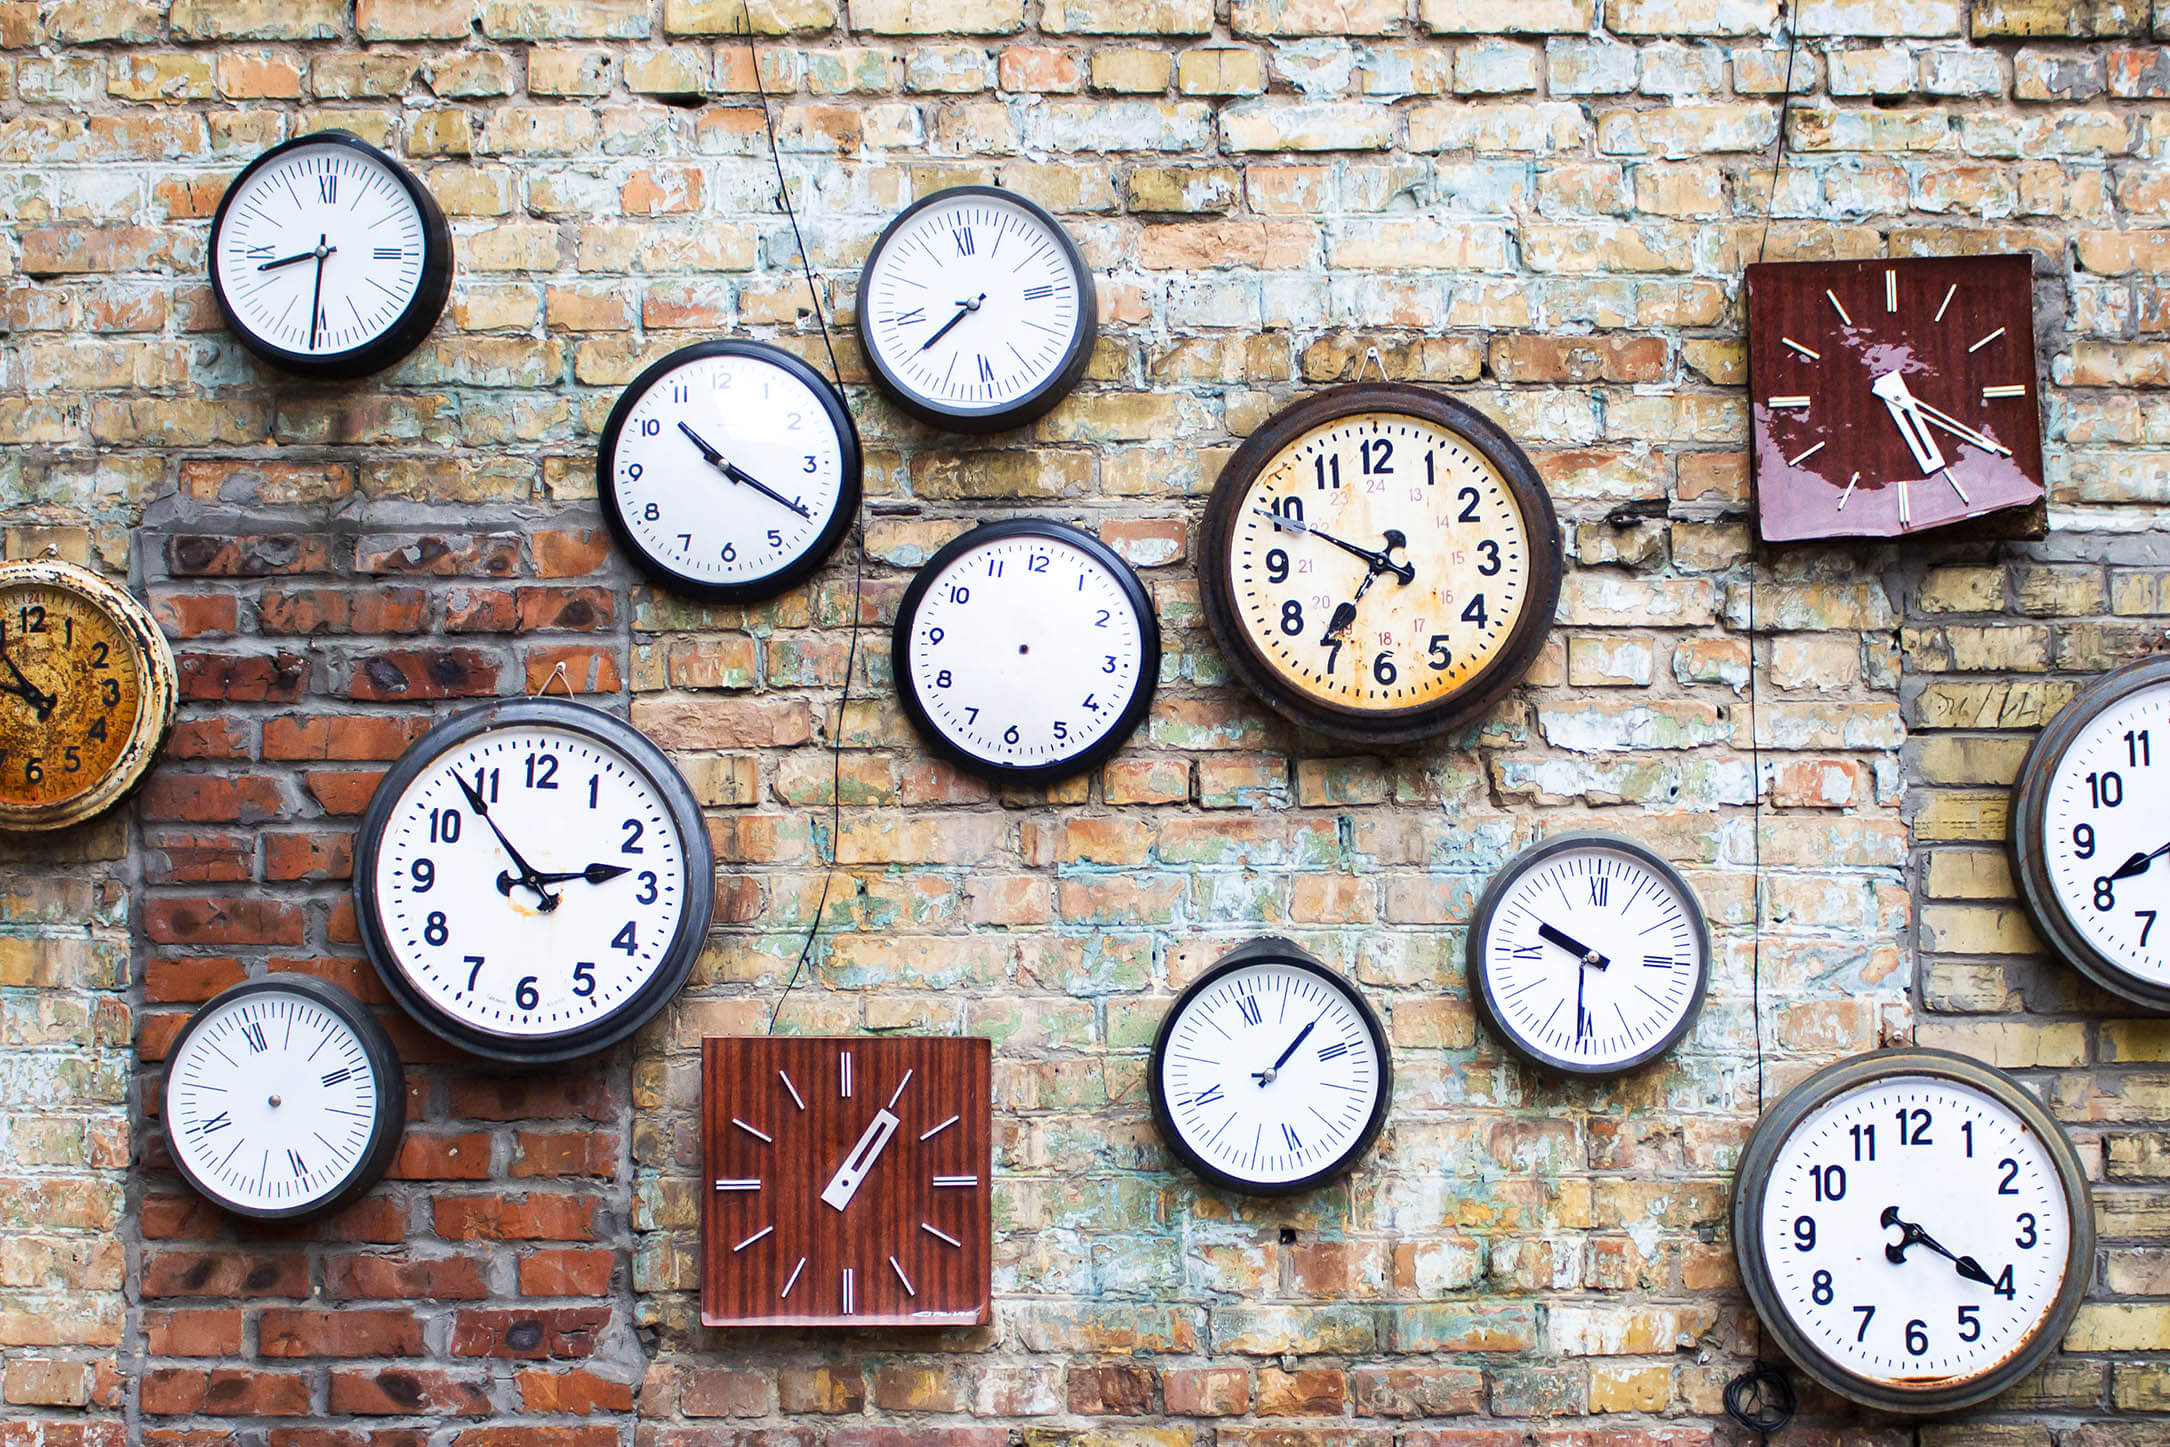 Lots of clocks on a brick wall